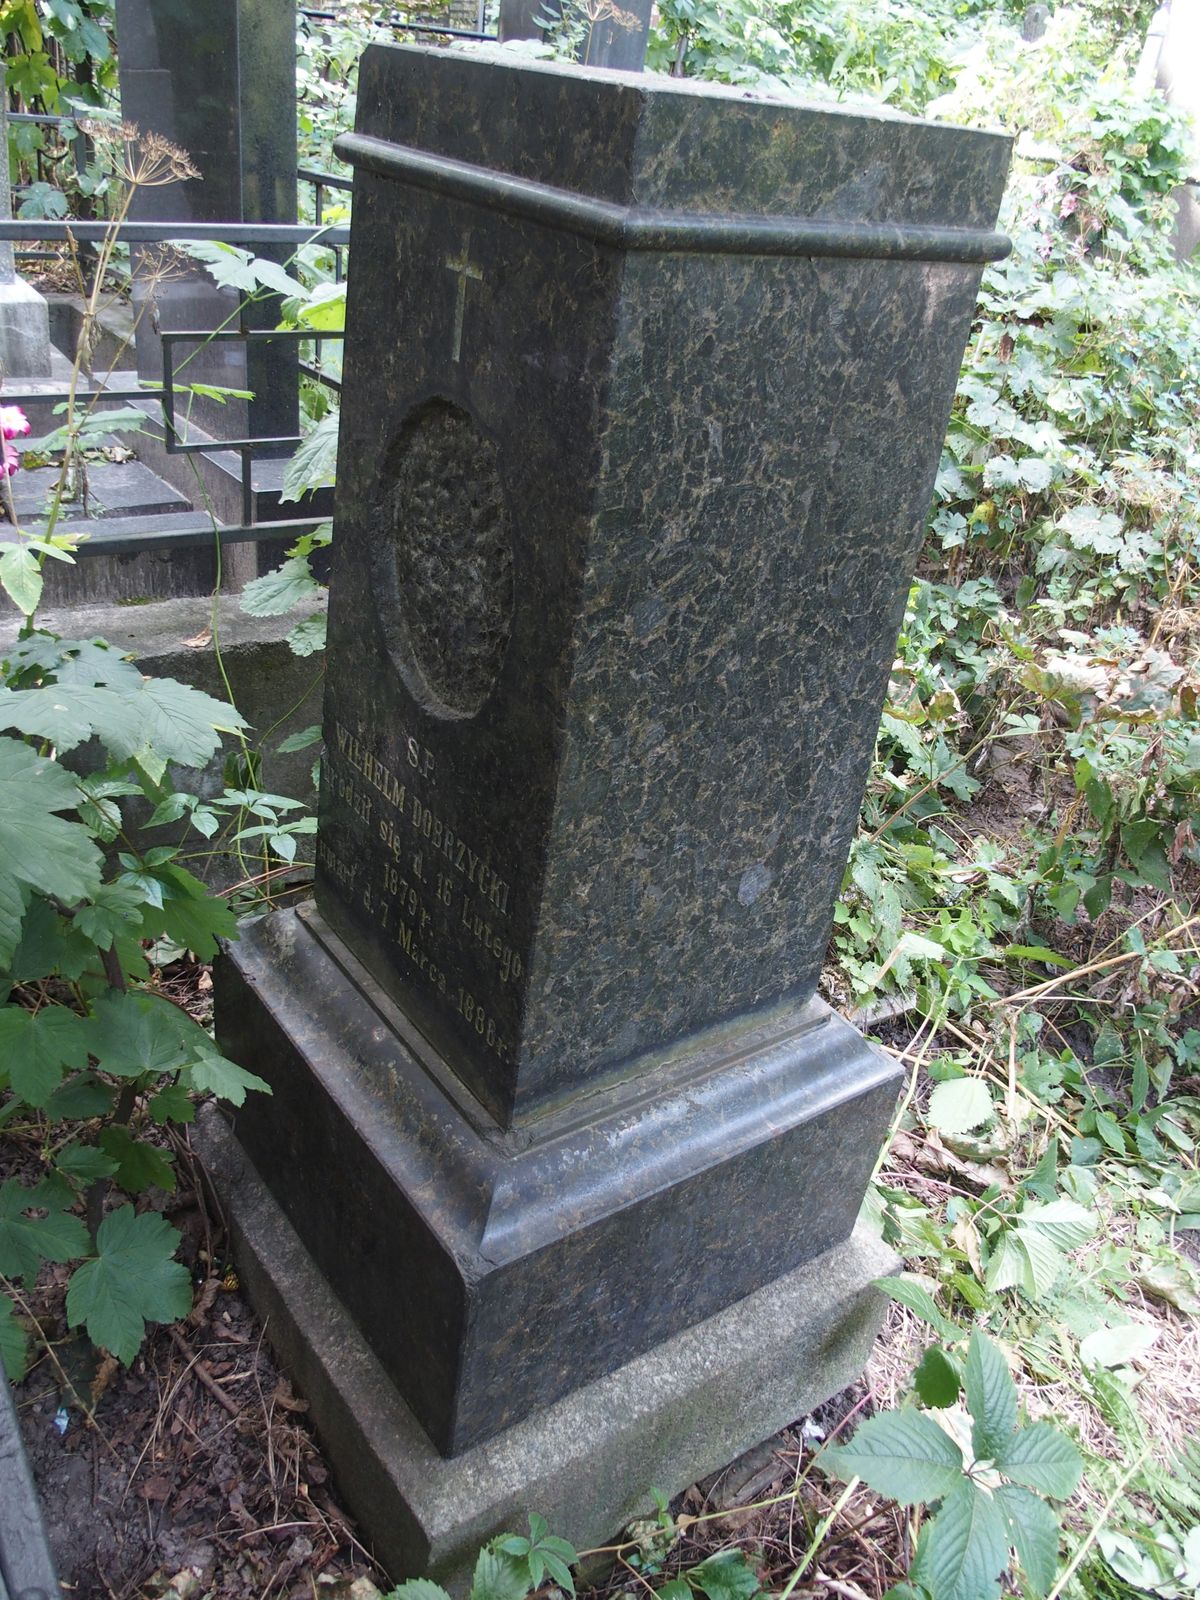 Tombstone of Wilhelm Dobrzycki, Baykova cemetery, Kyiv, 2021